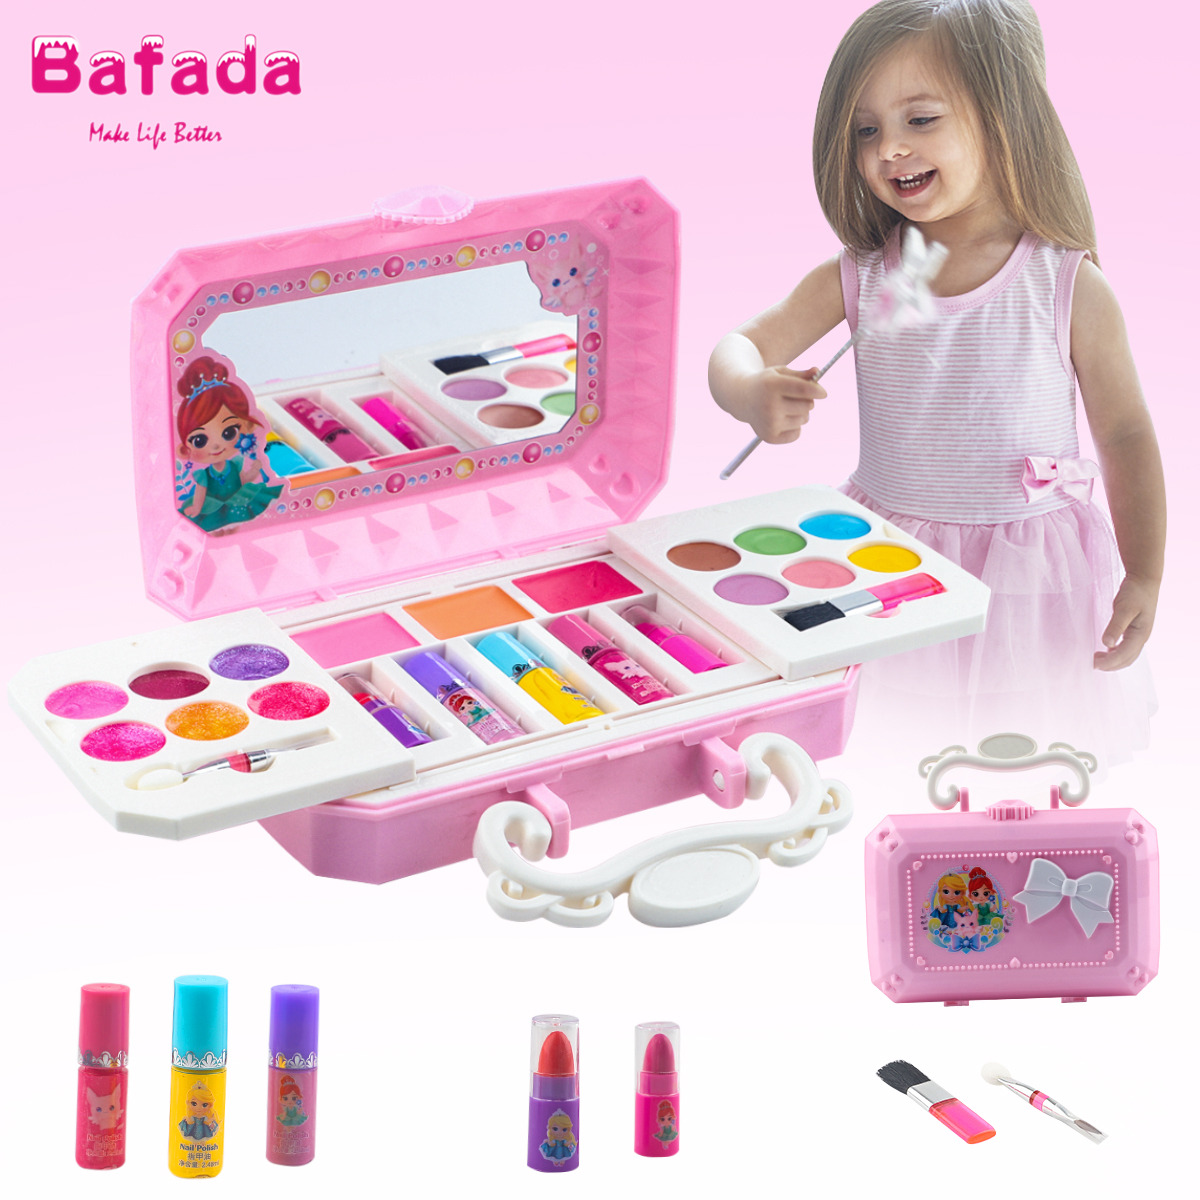 Bafada Bộ mỹ phẩm mini Carnival Beauty Mini cho bé gái chơi với búp bê, chất liệu an toàn không độc hại, đã được kiểm định an toàn – INTL